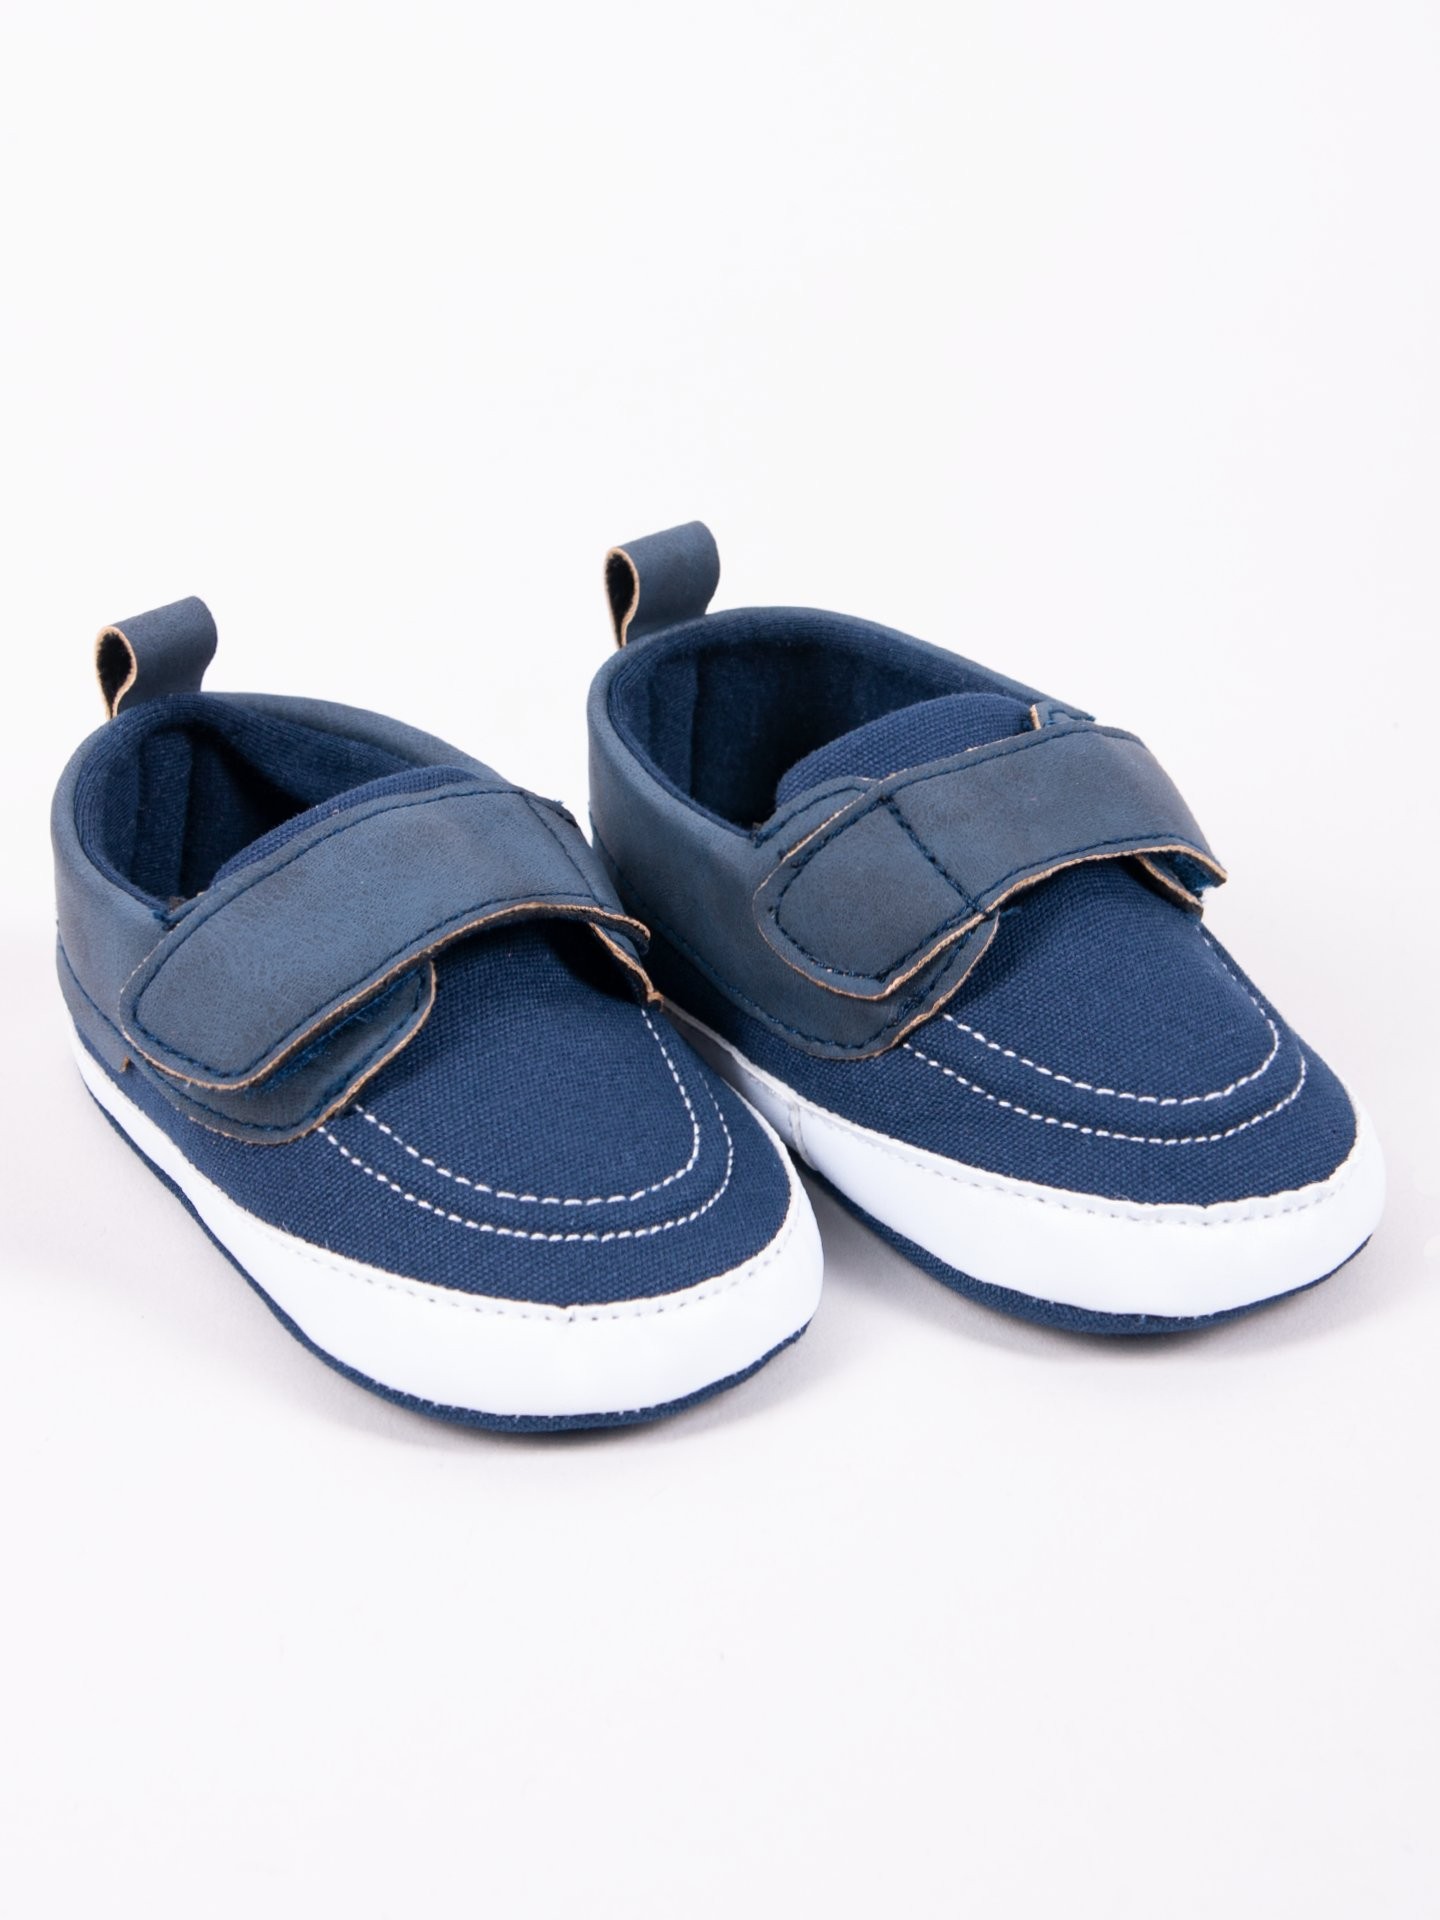 Levně Yoclub Kids's Baby Boy Shoes OBO-0178C-1900 Navy Blue